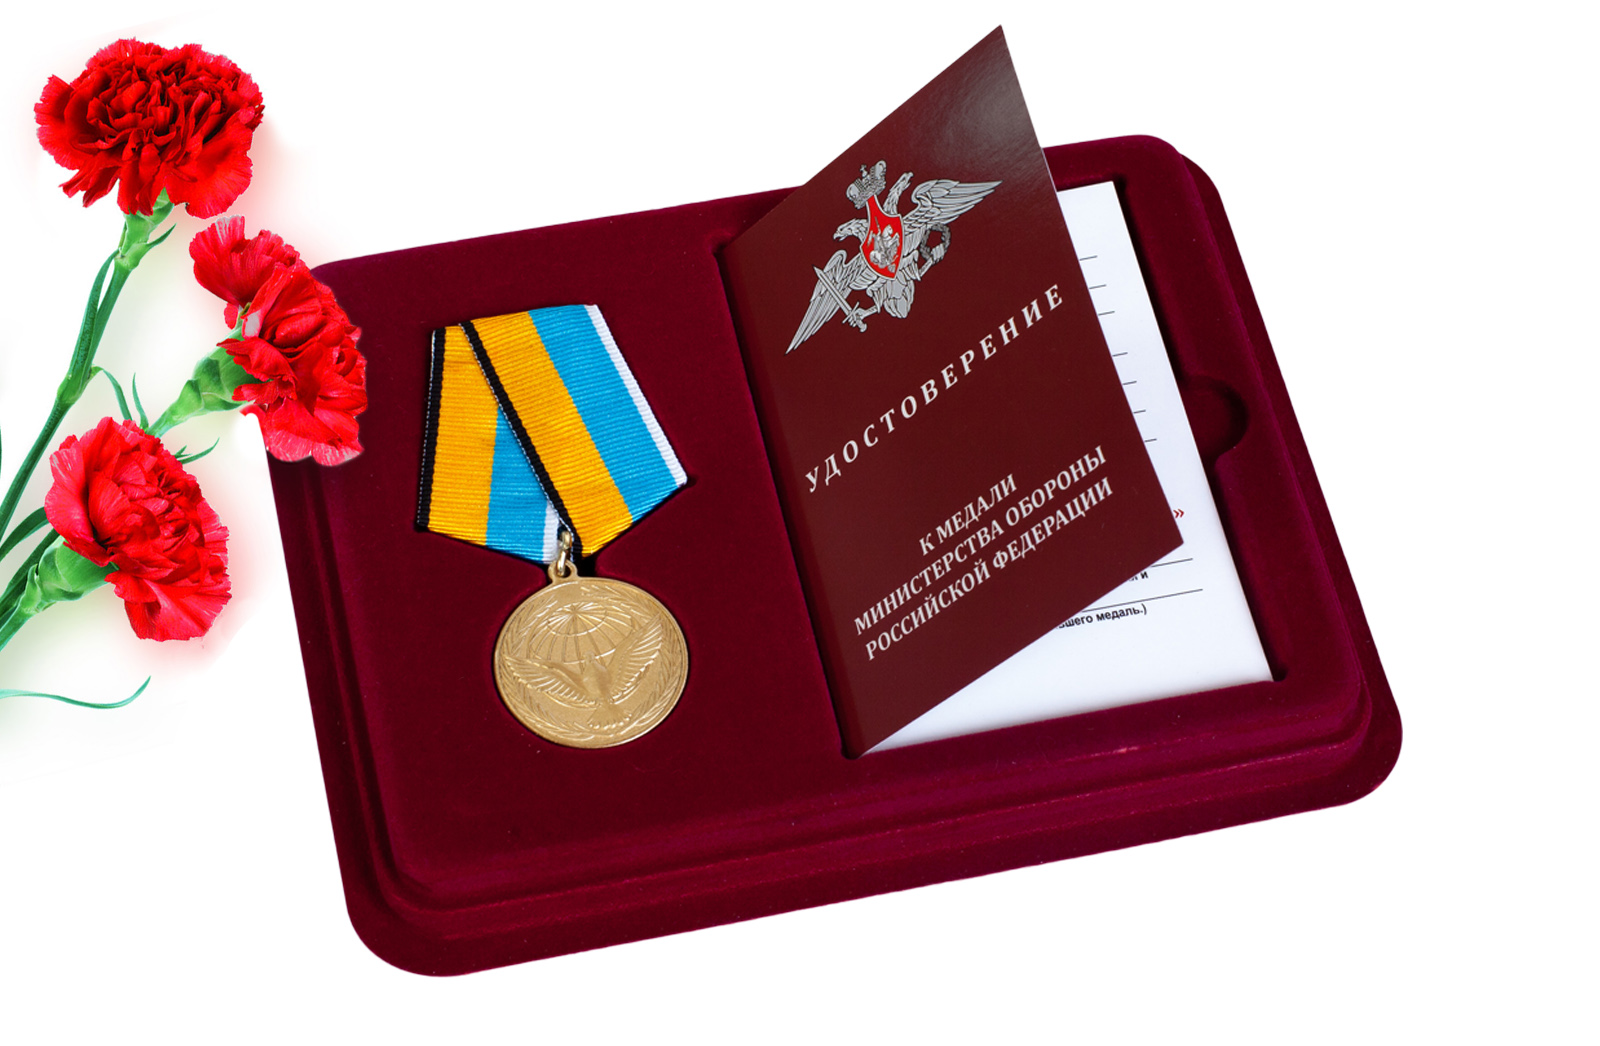 Купить памятную медаль Участнику миротворческой операции с доставкой